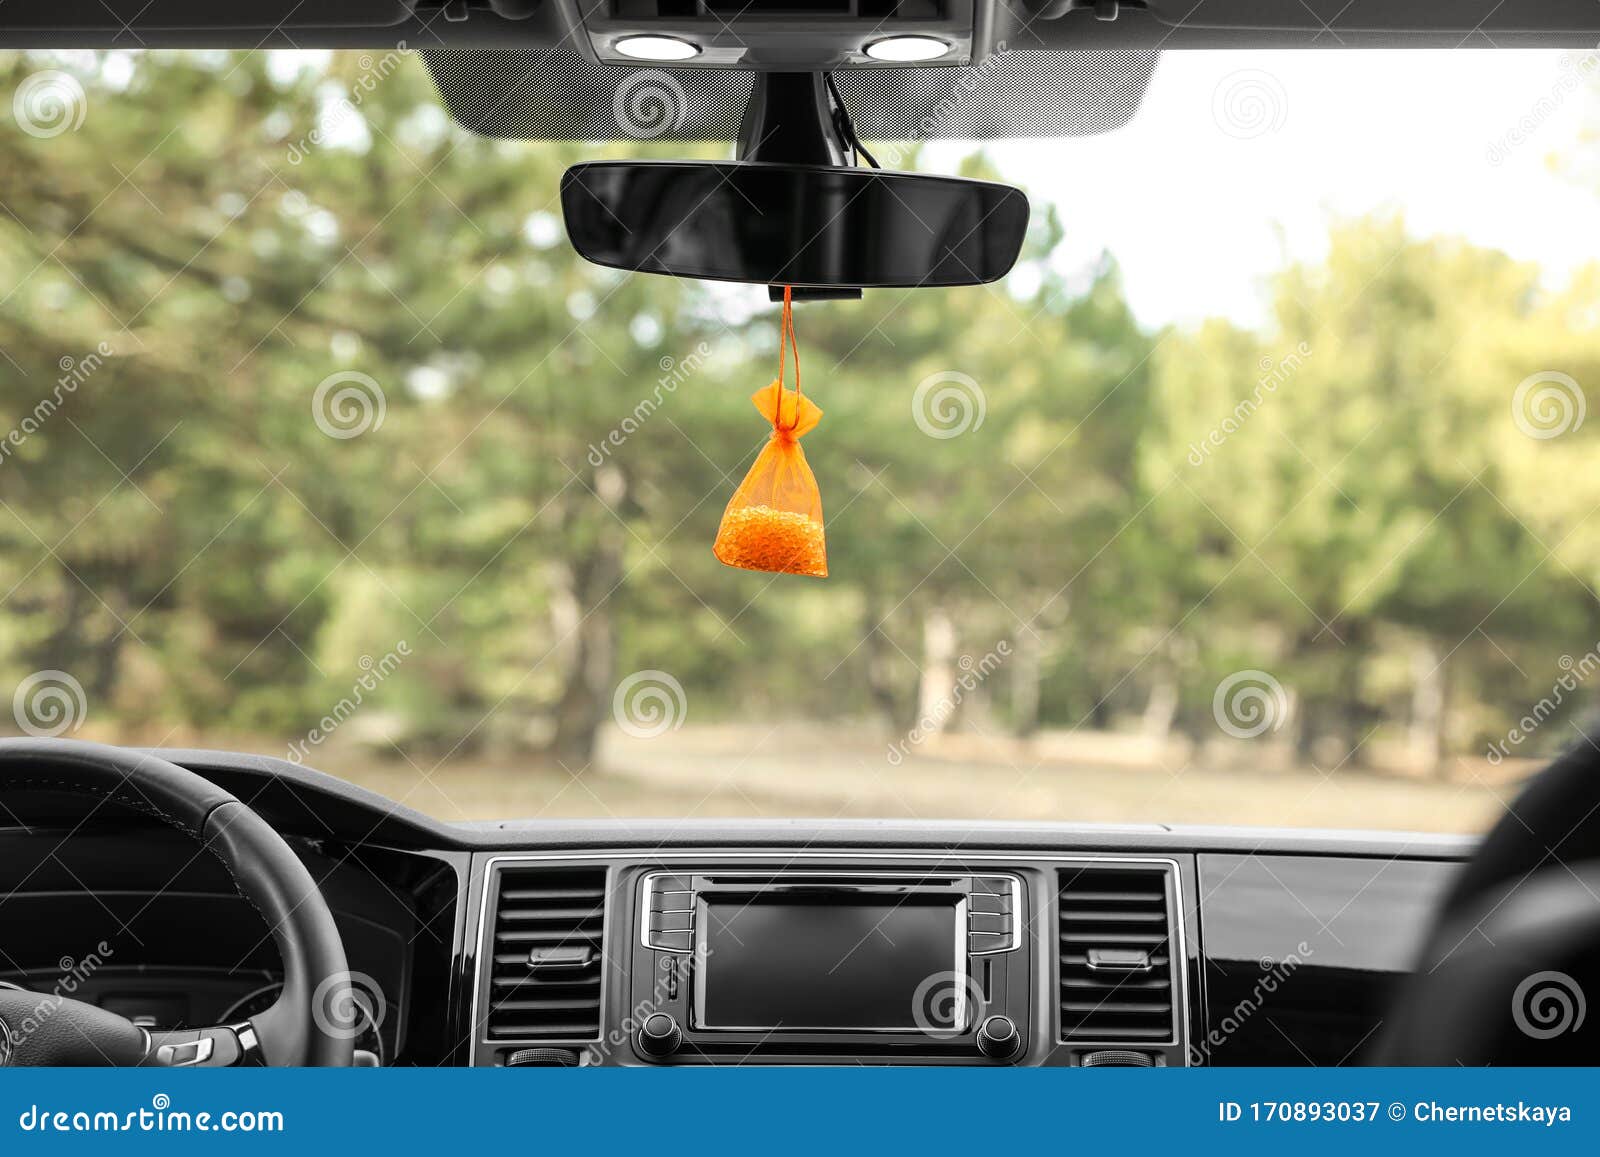 Car air freshener hanging - .de